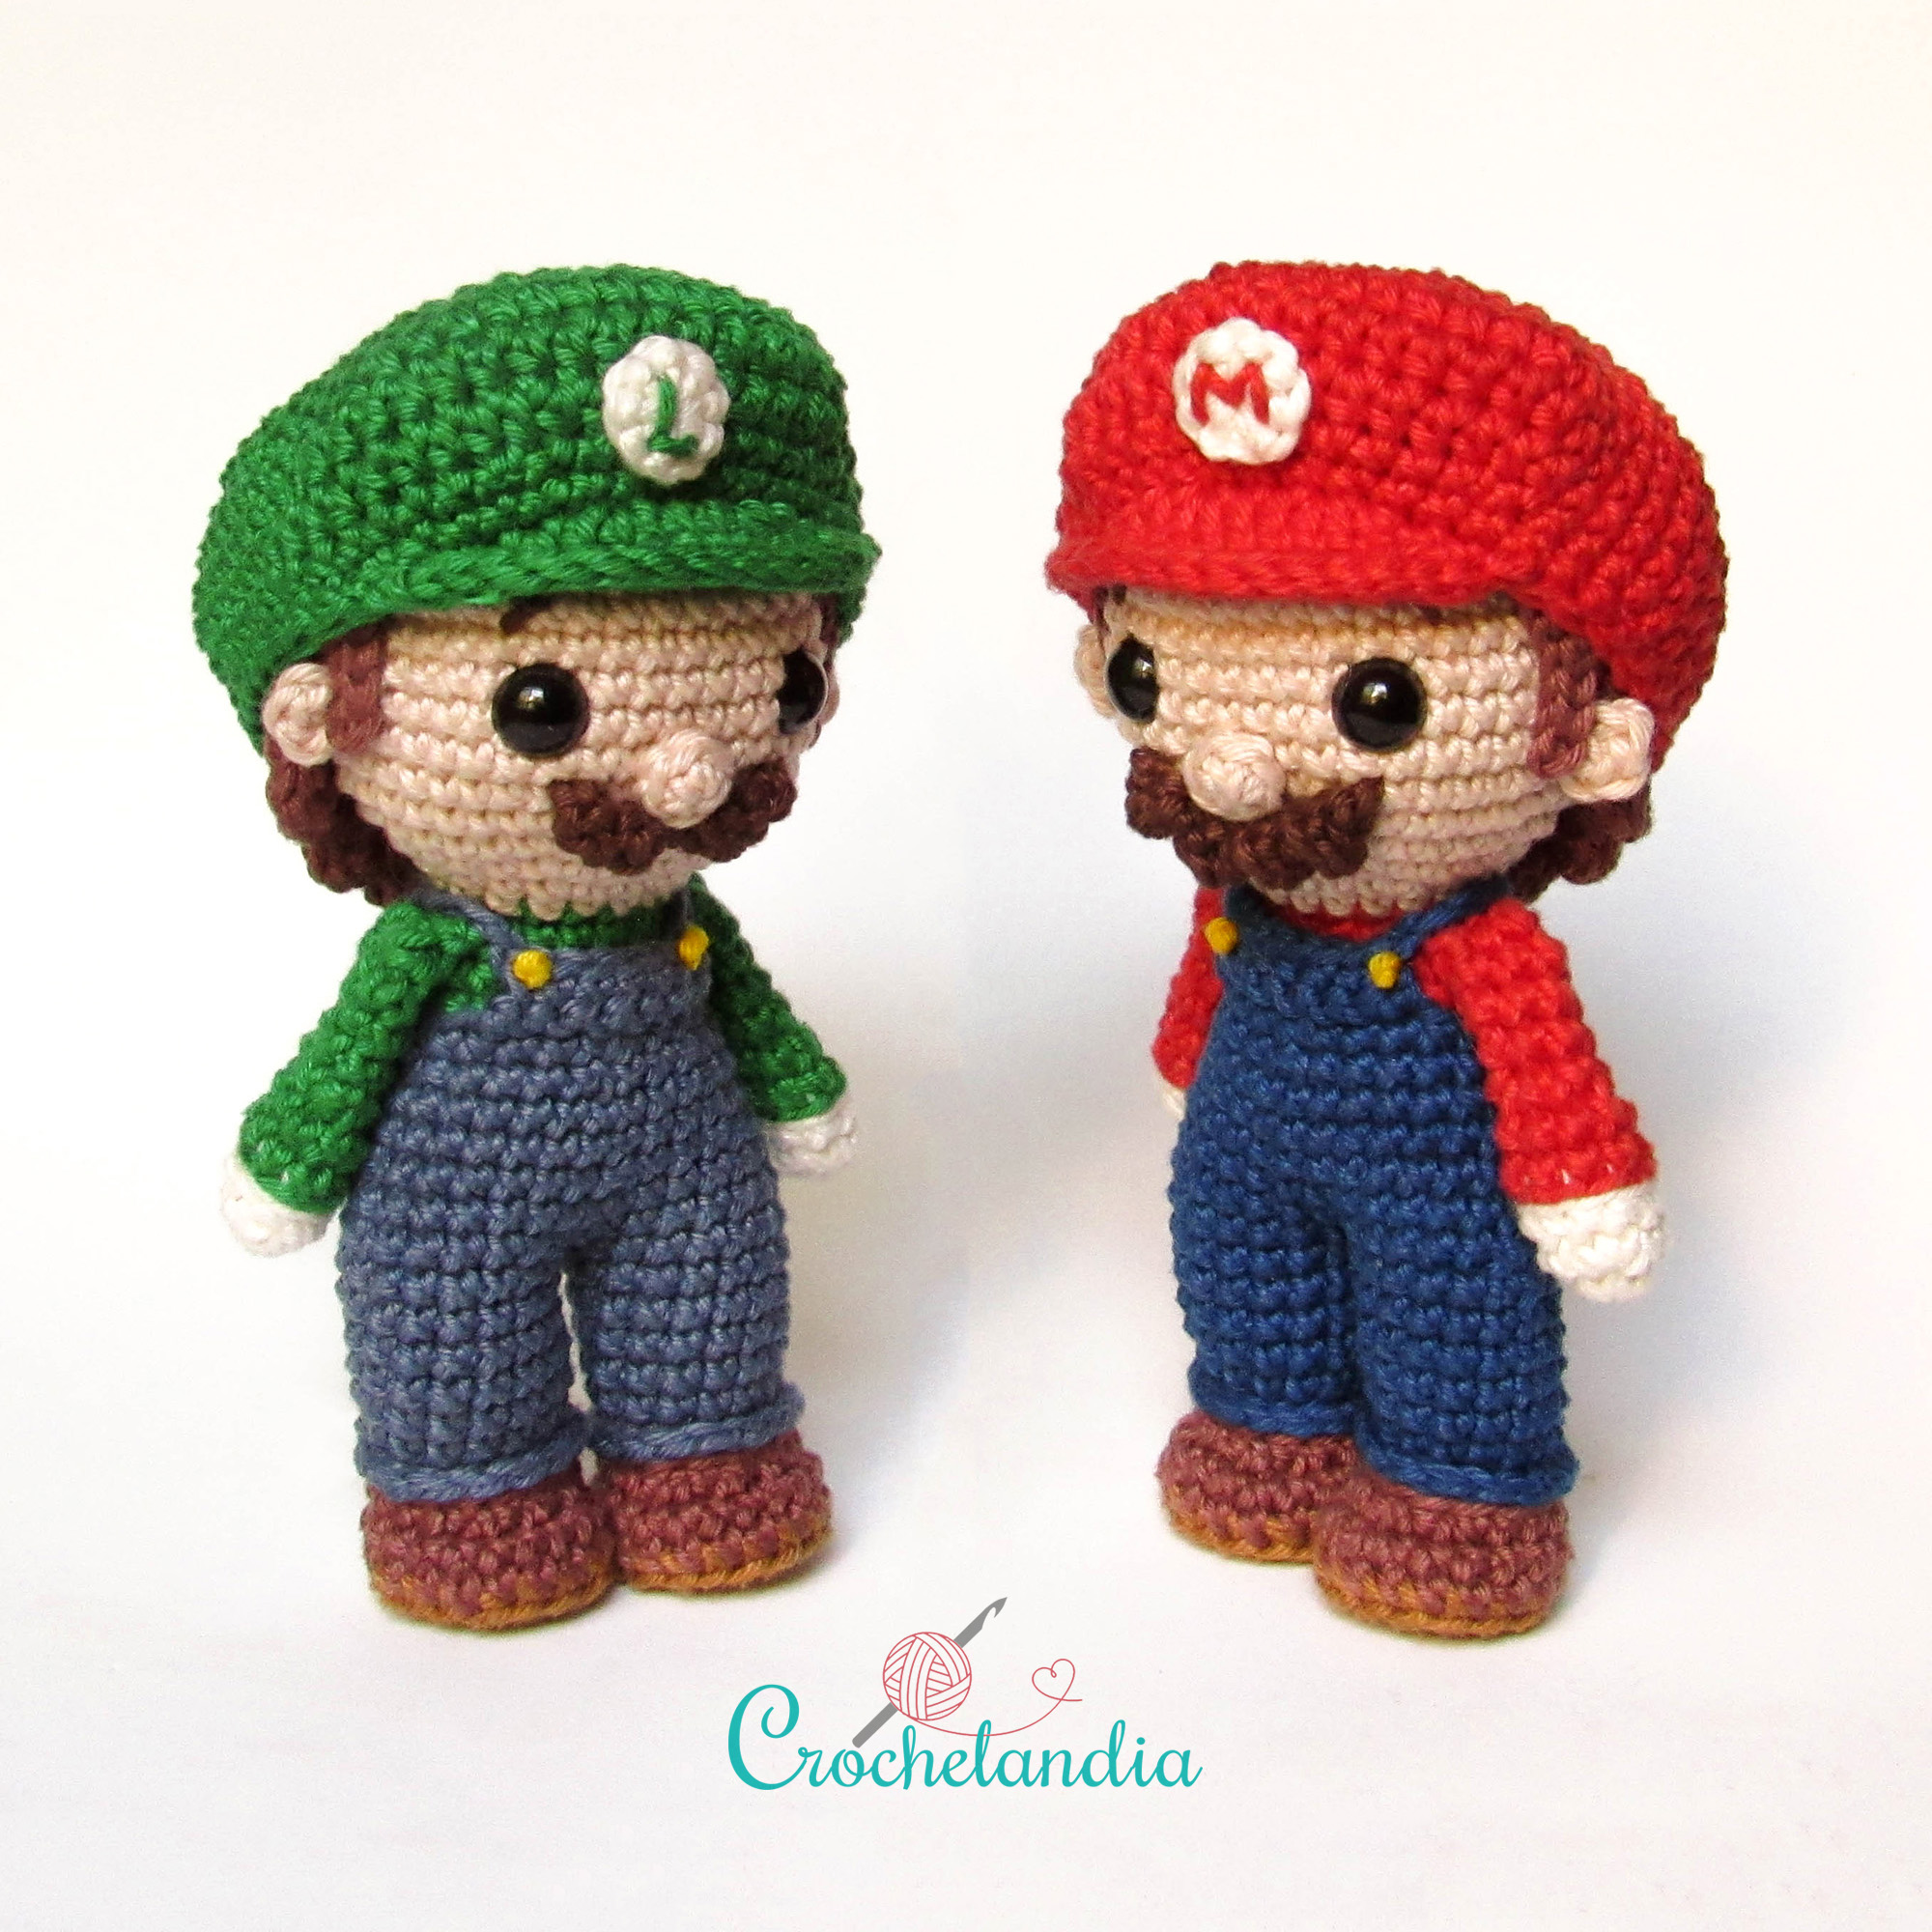 Mario & Luigi - by Crochelandia